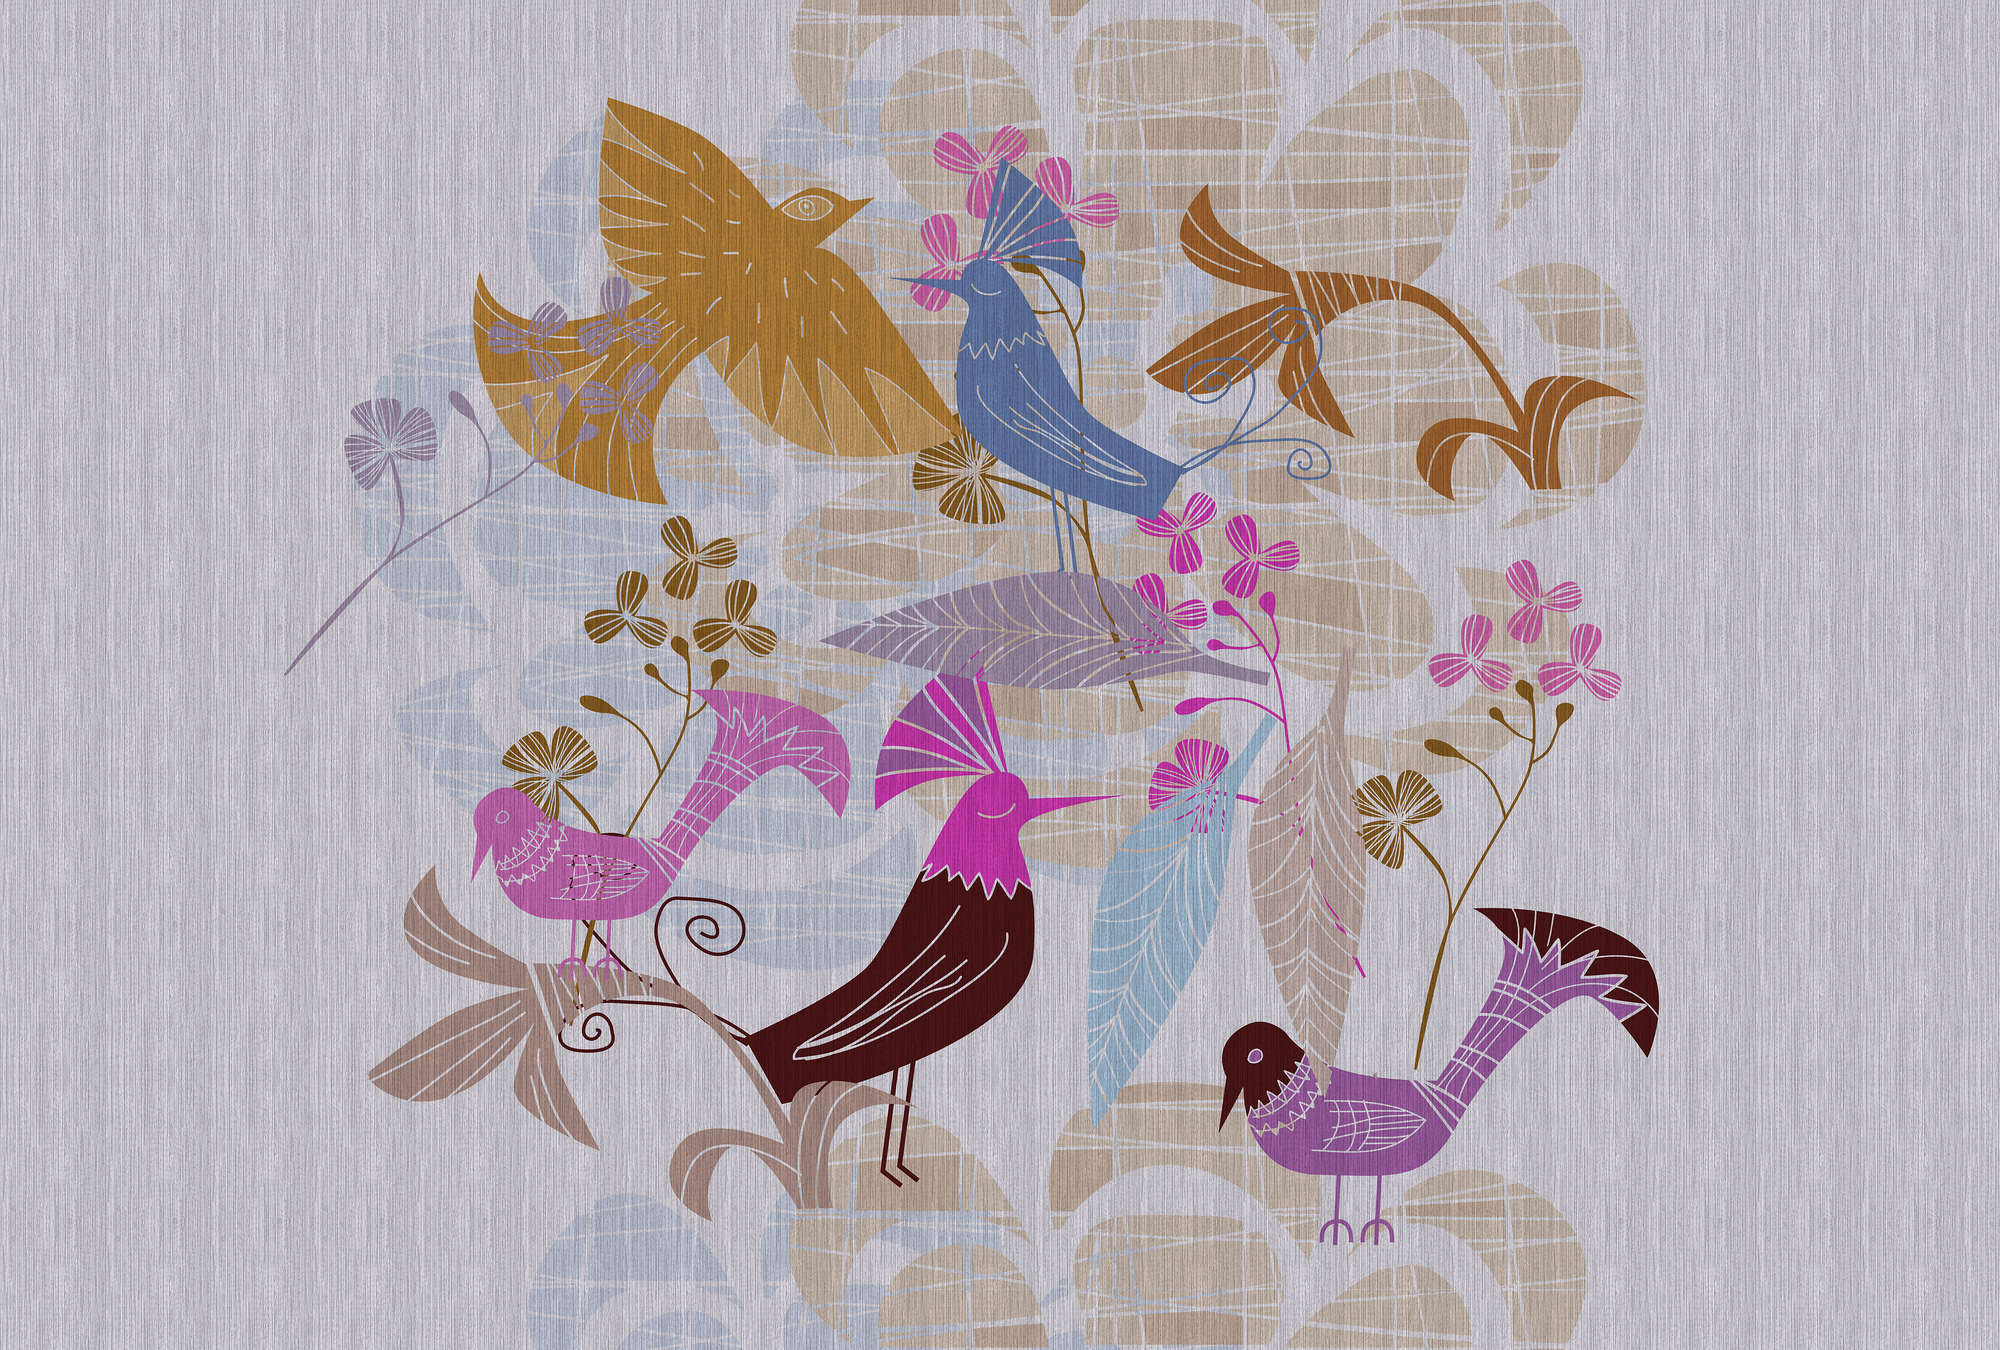             Birdland 1 - Papier peint oiseau style rétro scandinave
        